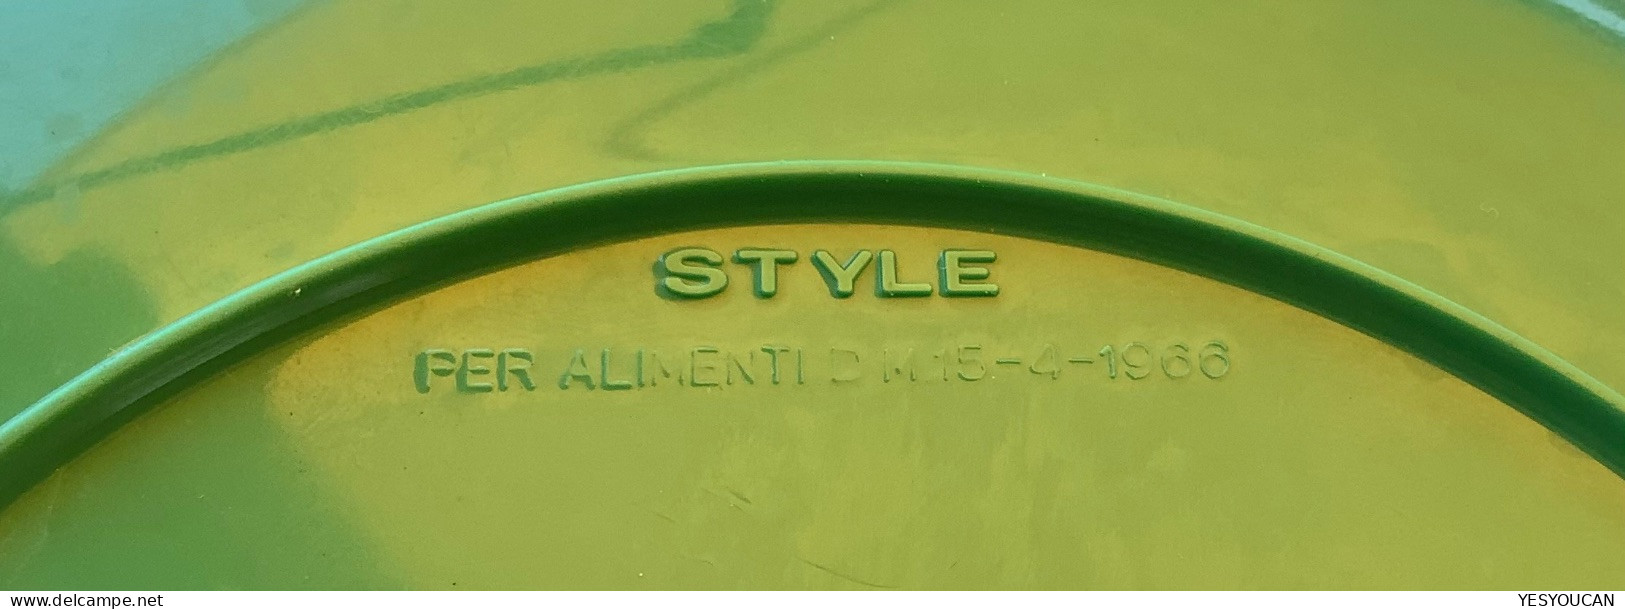 STYLE PER ALIMENTI 1966 Rare Italian Vintage Plastic Picnic Plate „Safari“  (Italy Retro 1960th Design Italie Plats - Portate